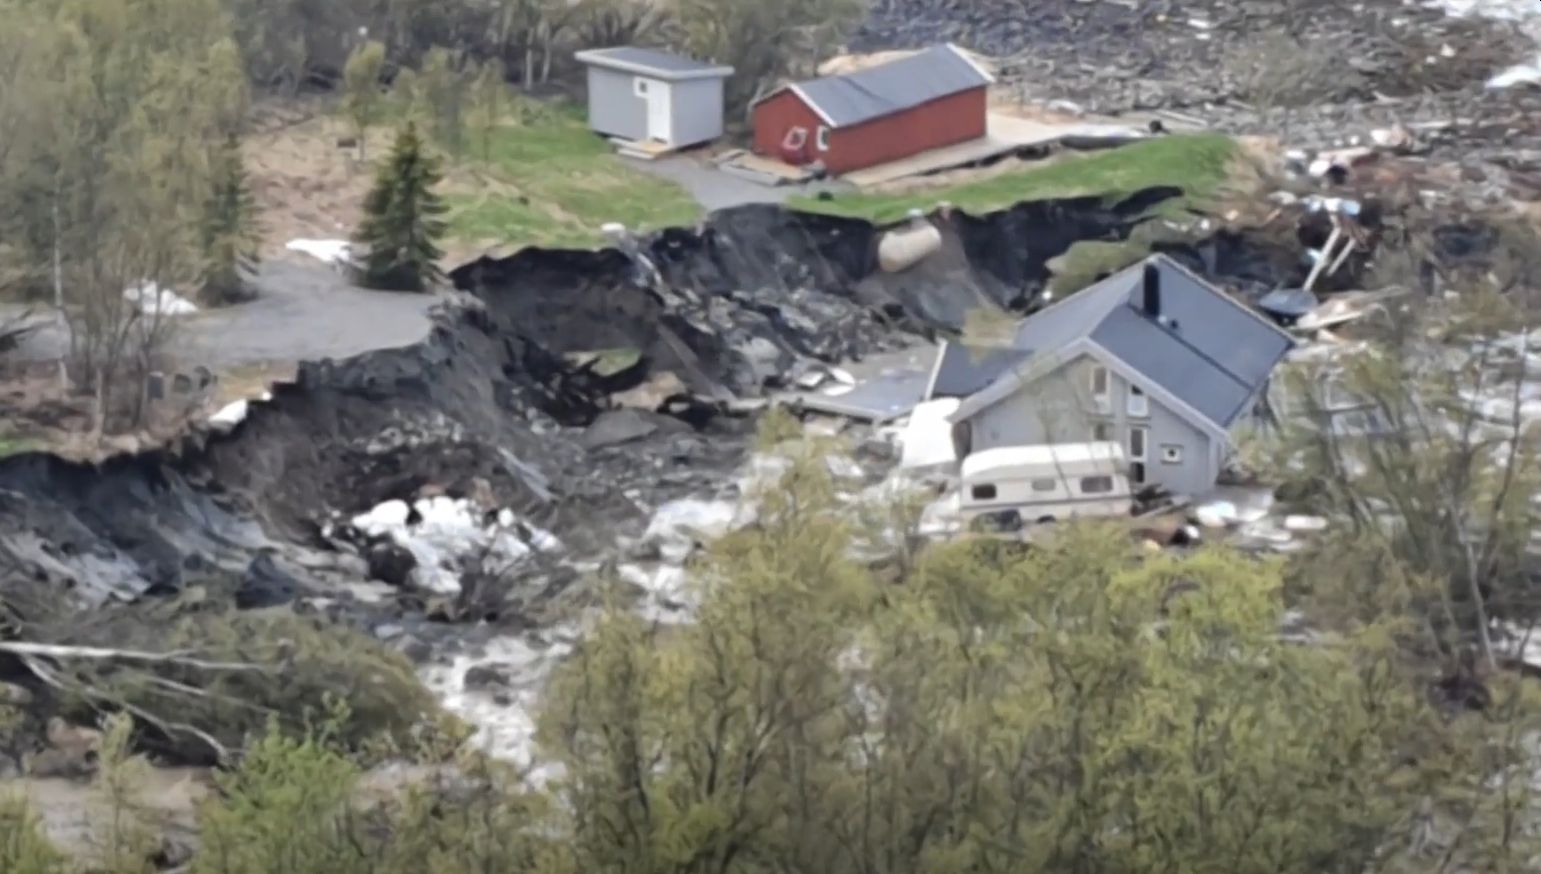 Alunecările de teren au cauzat evacuarea a sute de persoane în sudul Norvegiei